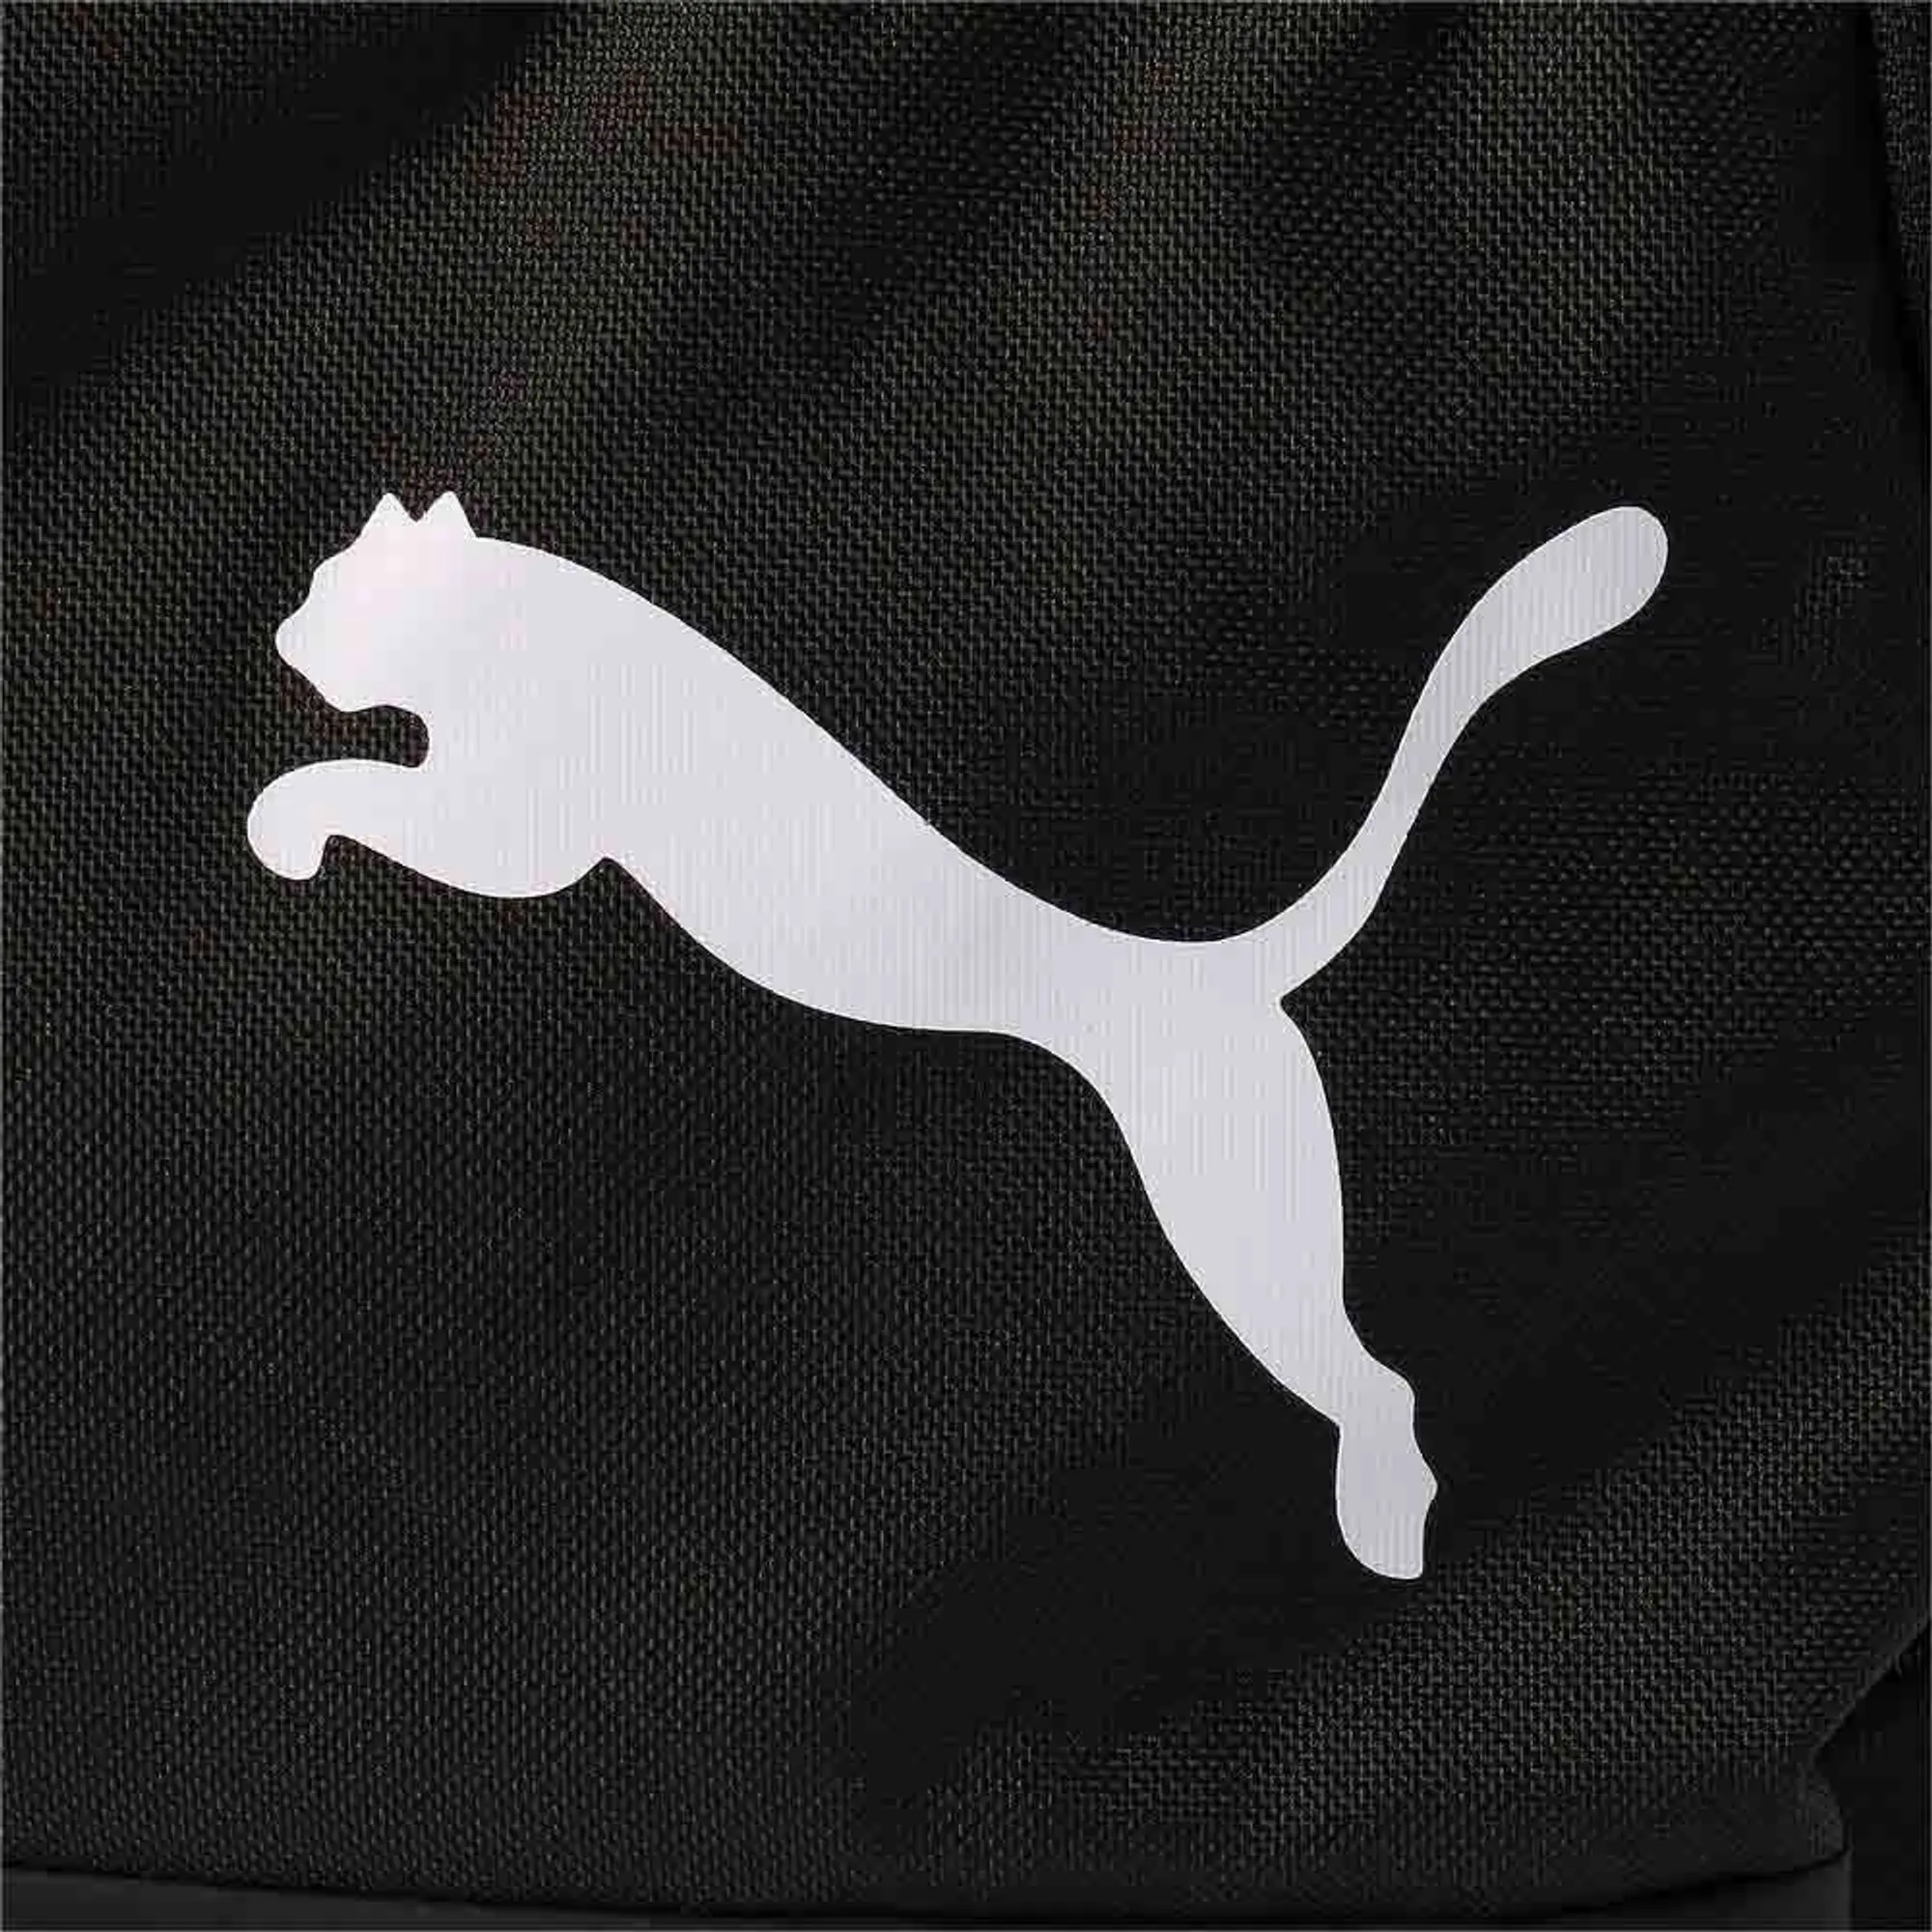 Puma Unisex GOAL Medium Duffel Bag - Black - One Size